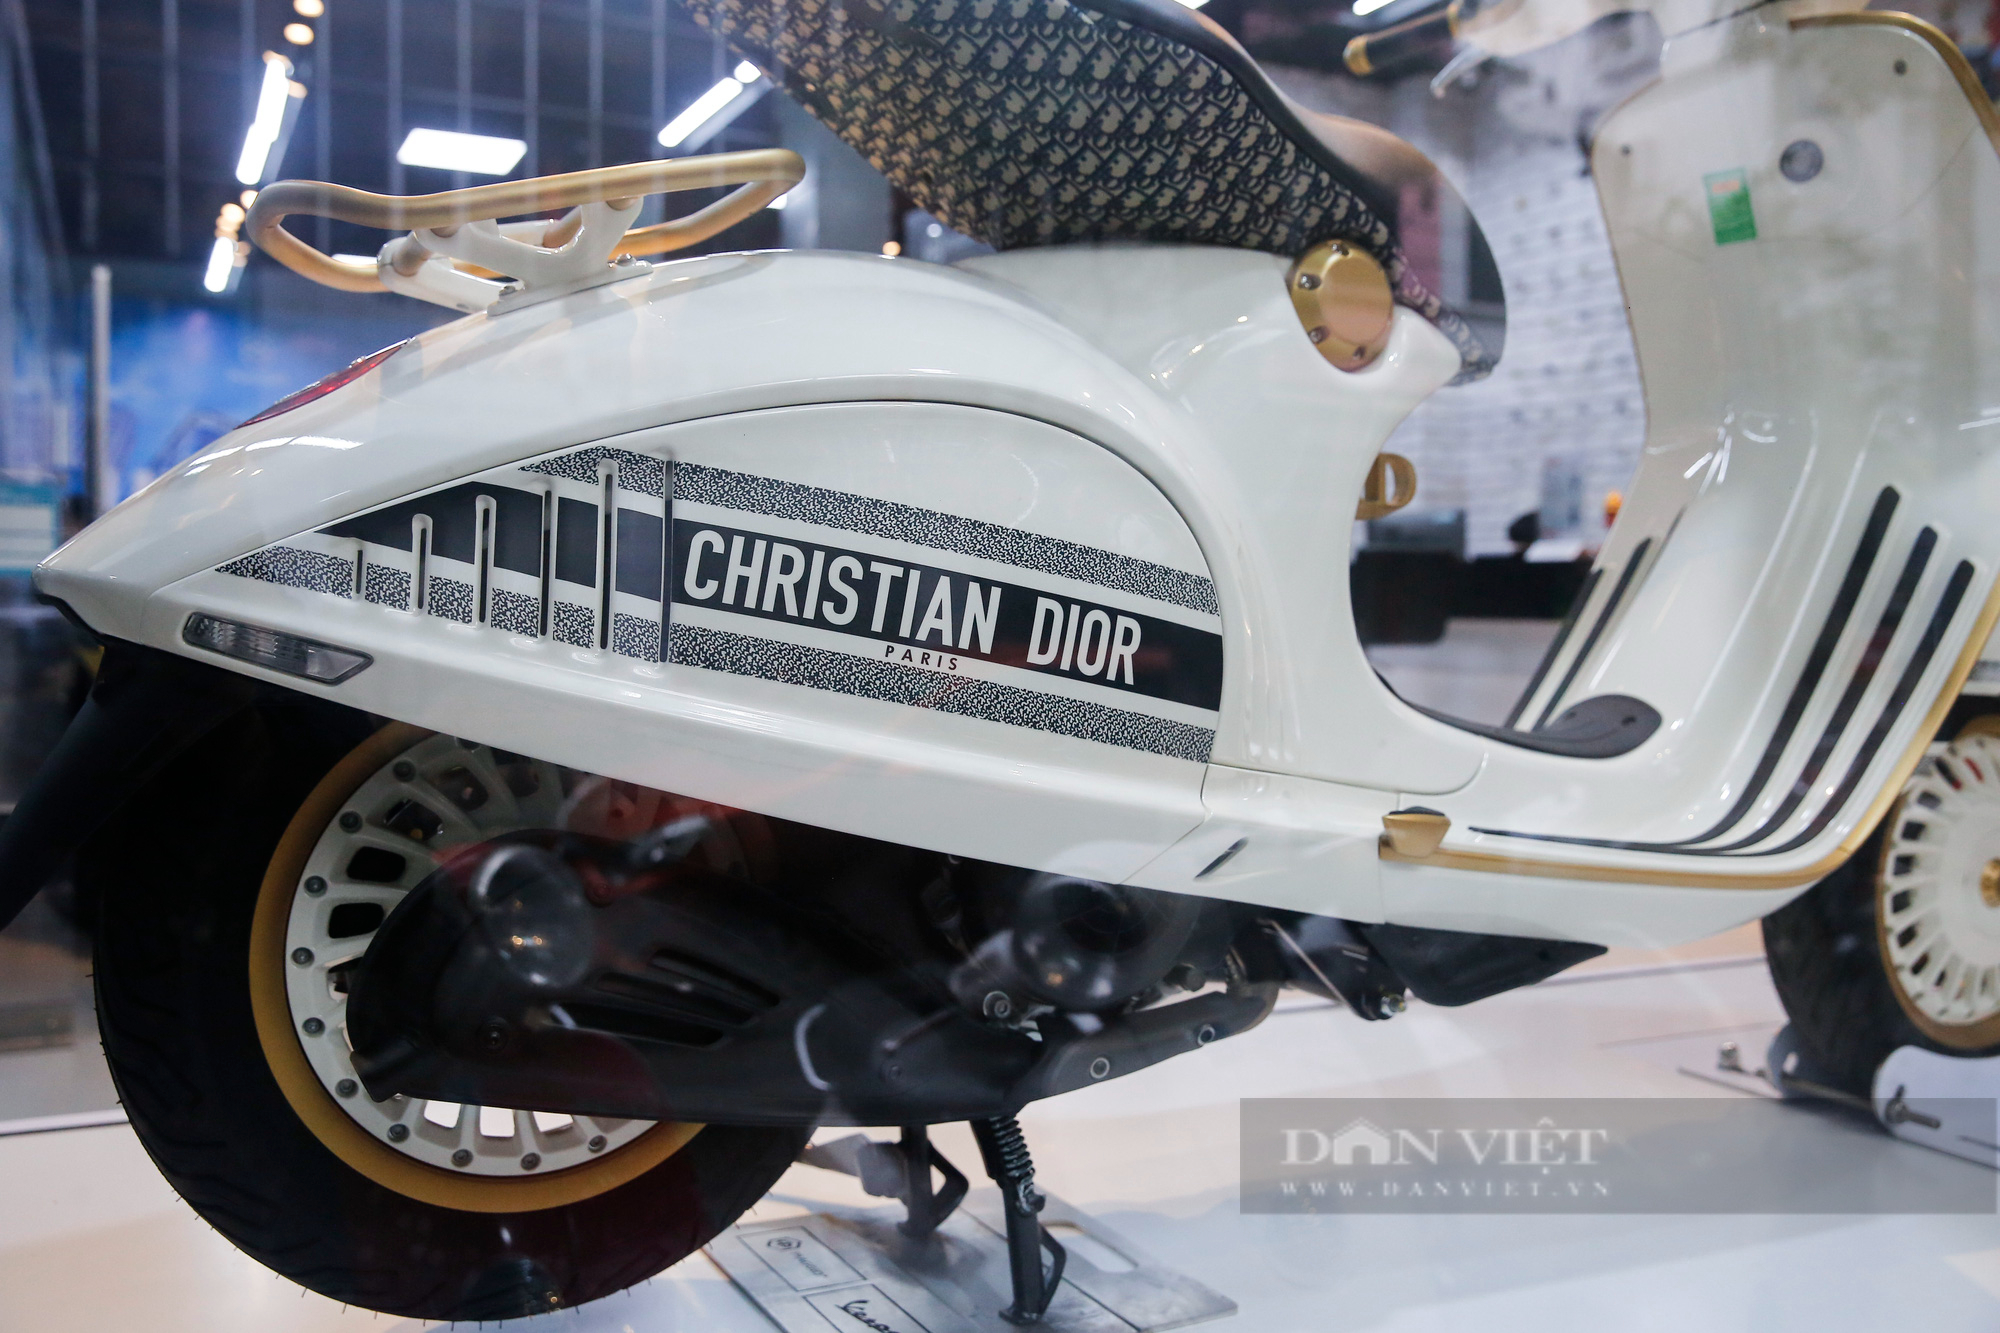 Vespa 946 Christian Dior - xe ga giá gần 700 triệu đồng - VnExpress